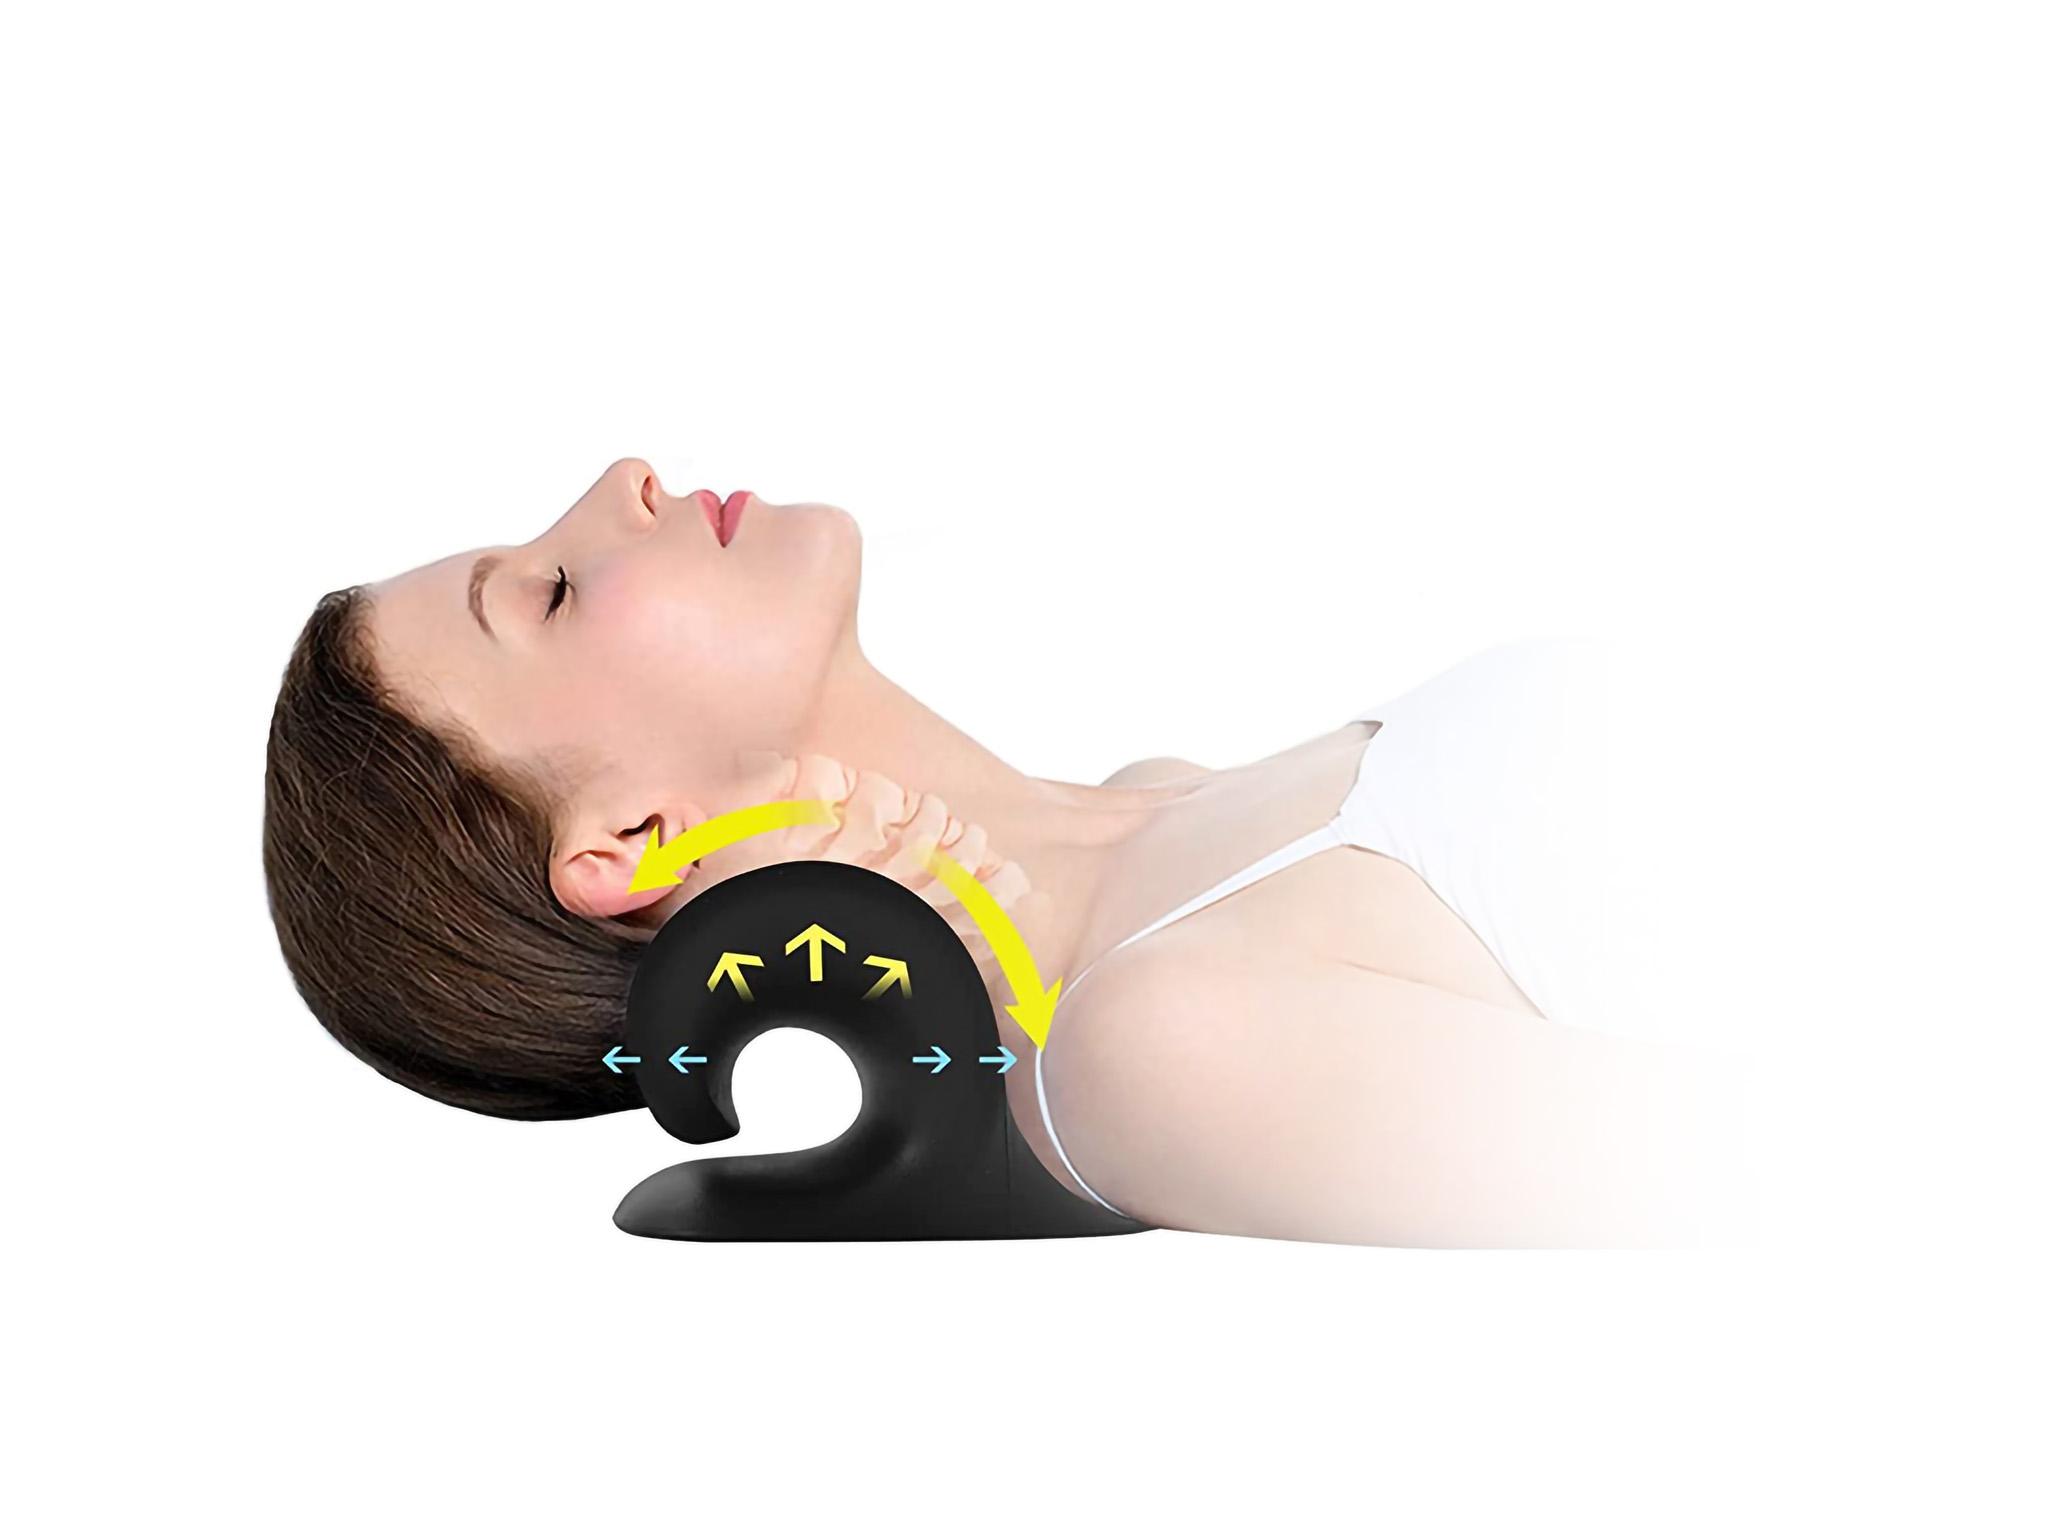 Nackenstrecker - Gegen Nackenschmerzen & Verspannungen - Für eine bessere Körperhaltung - Nacken Stretcher - Nackentrainer